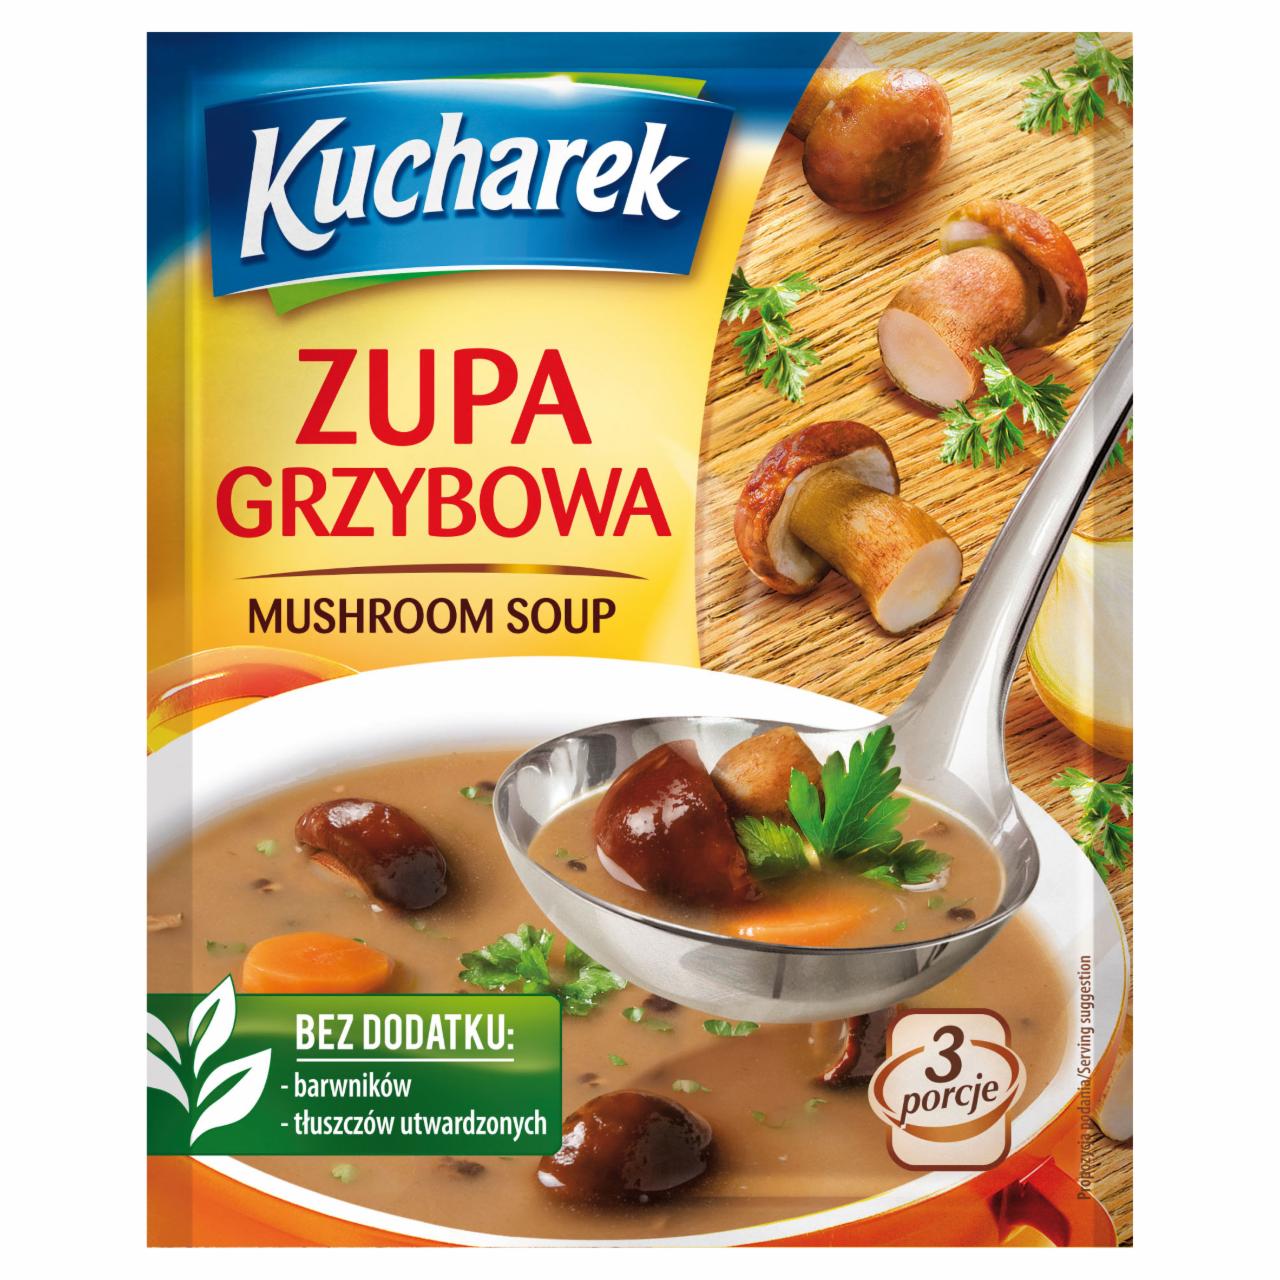 Zdjęcia - Kucharek Zupa grzybowa 42 g